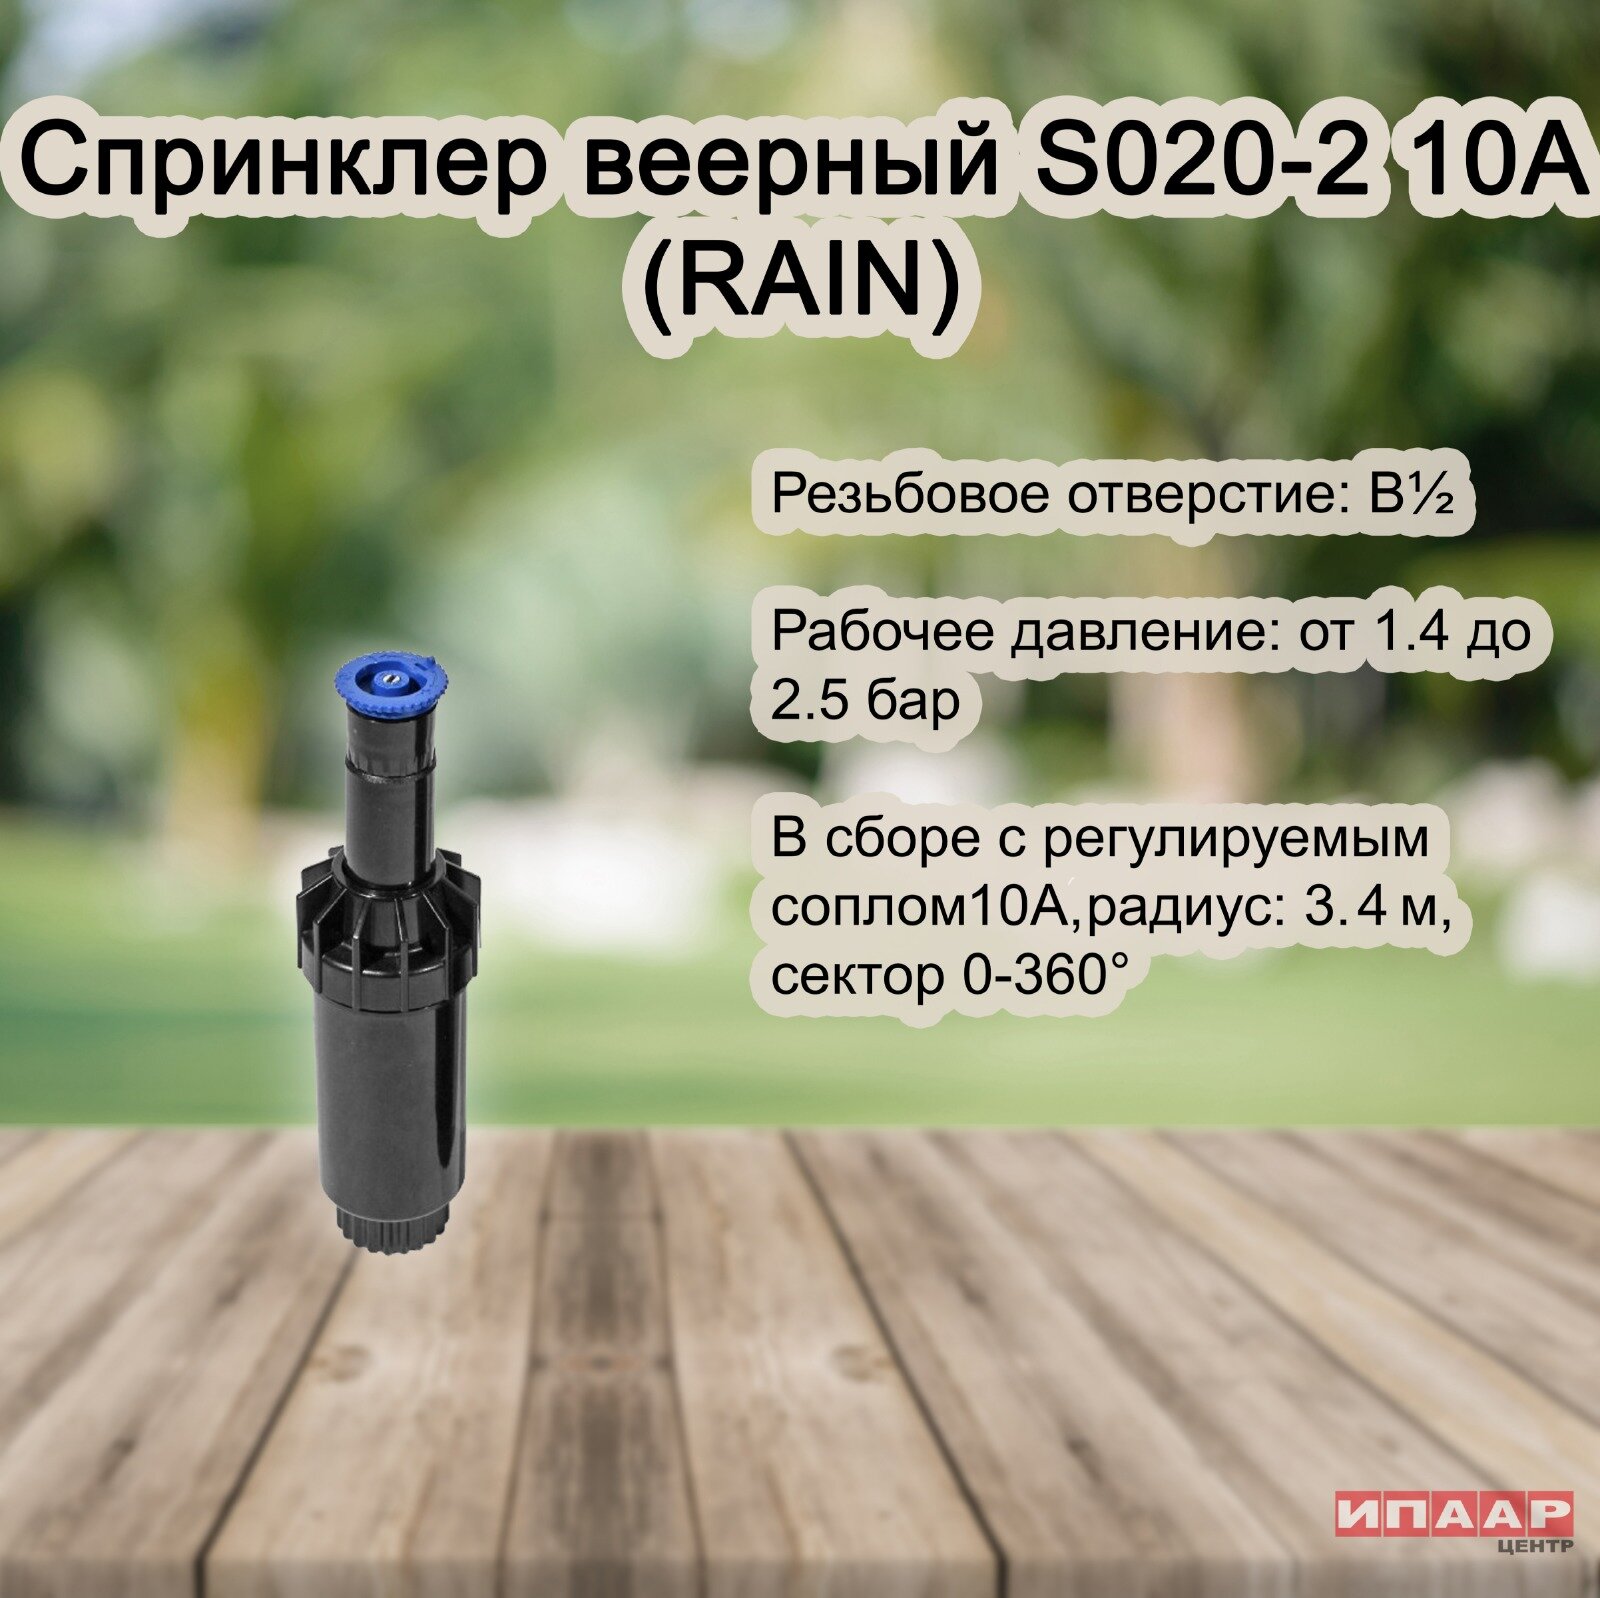 Спринклер веерный S020-2 10A (RAIN)